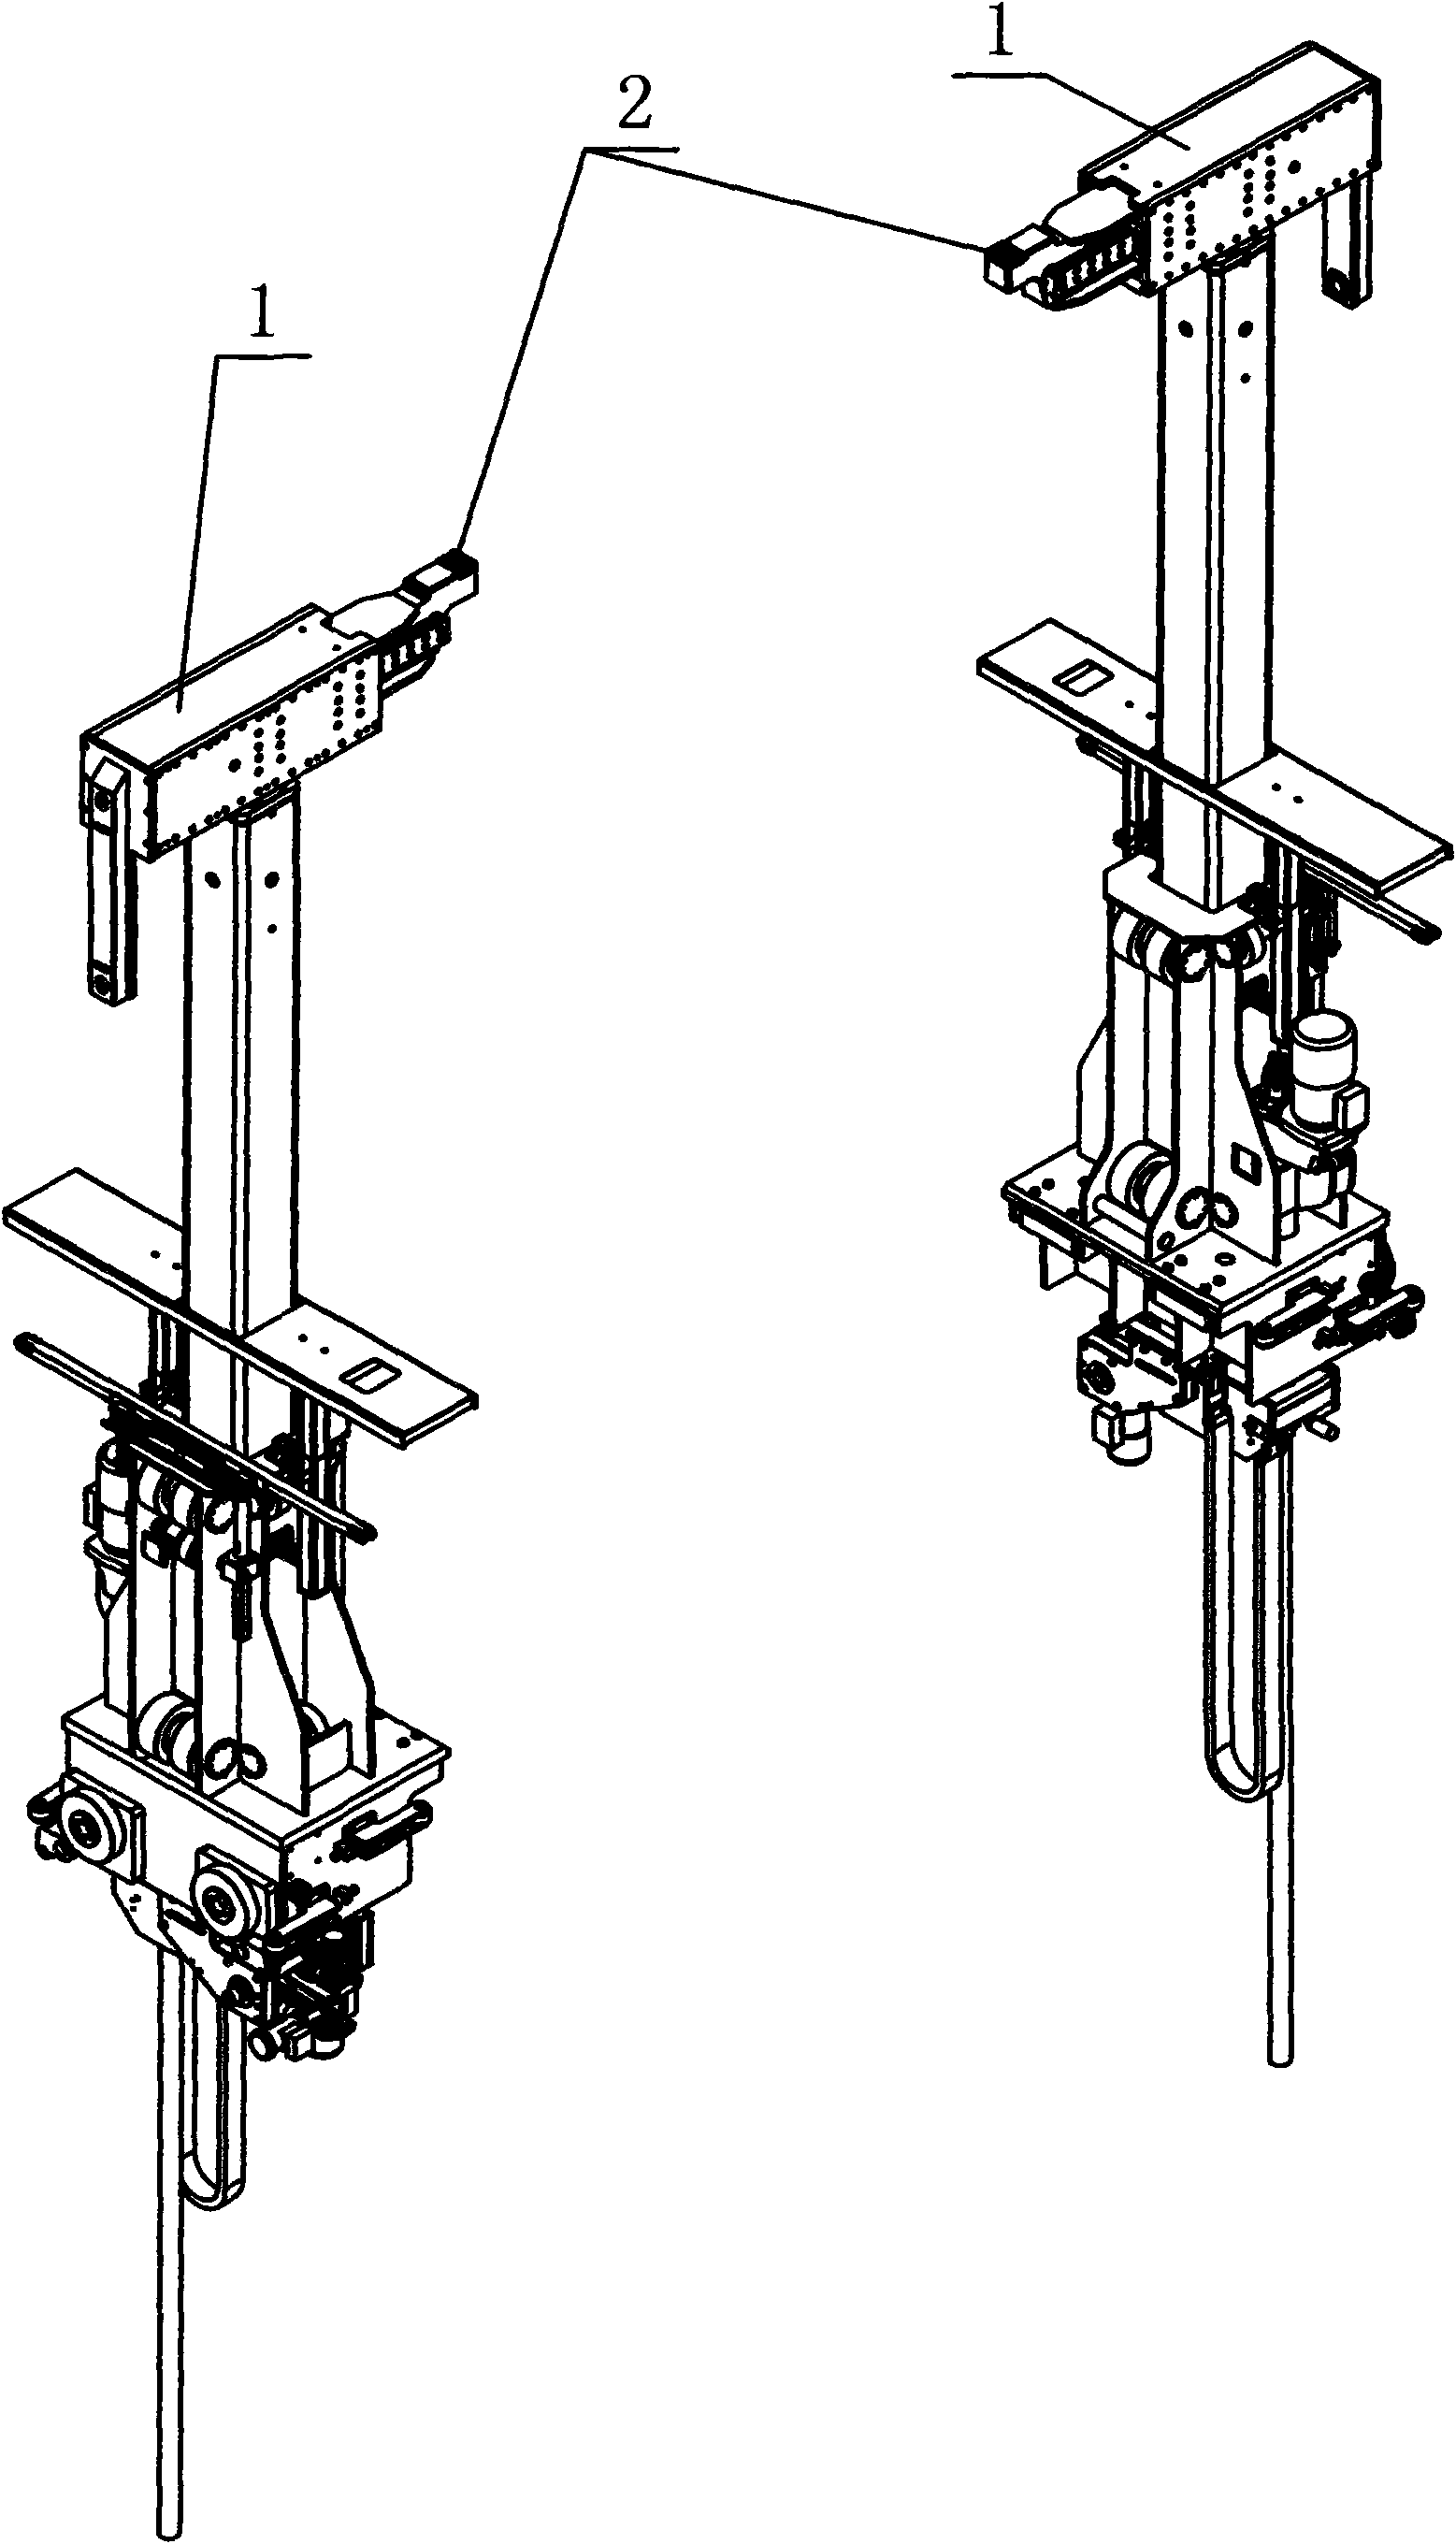 Load transverse adjusting mechanism for bilateral half-spring type holding head